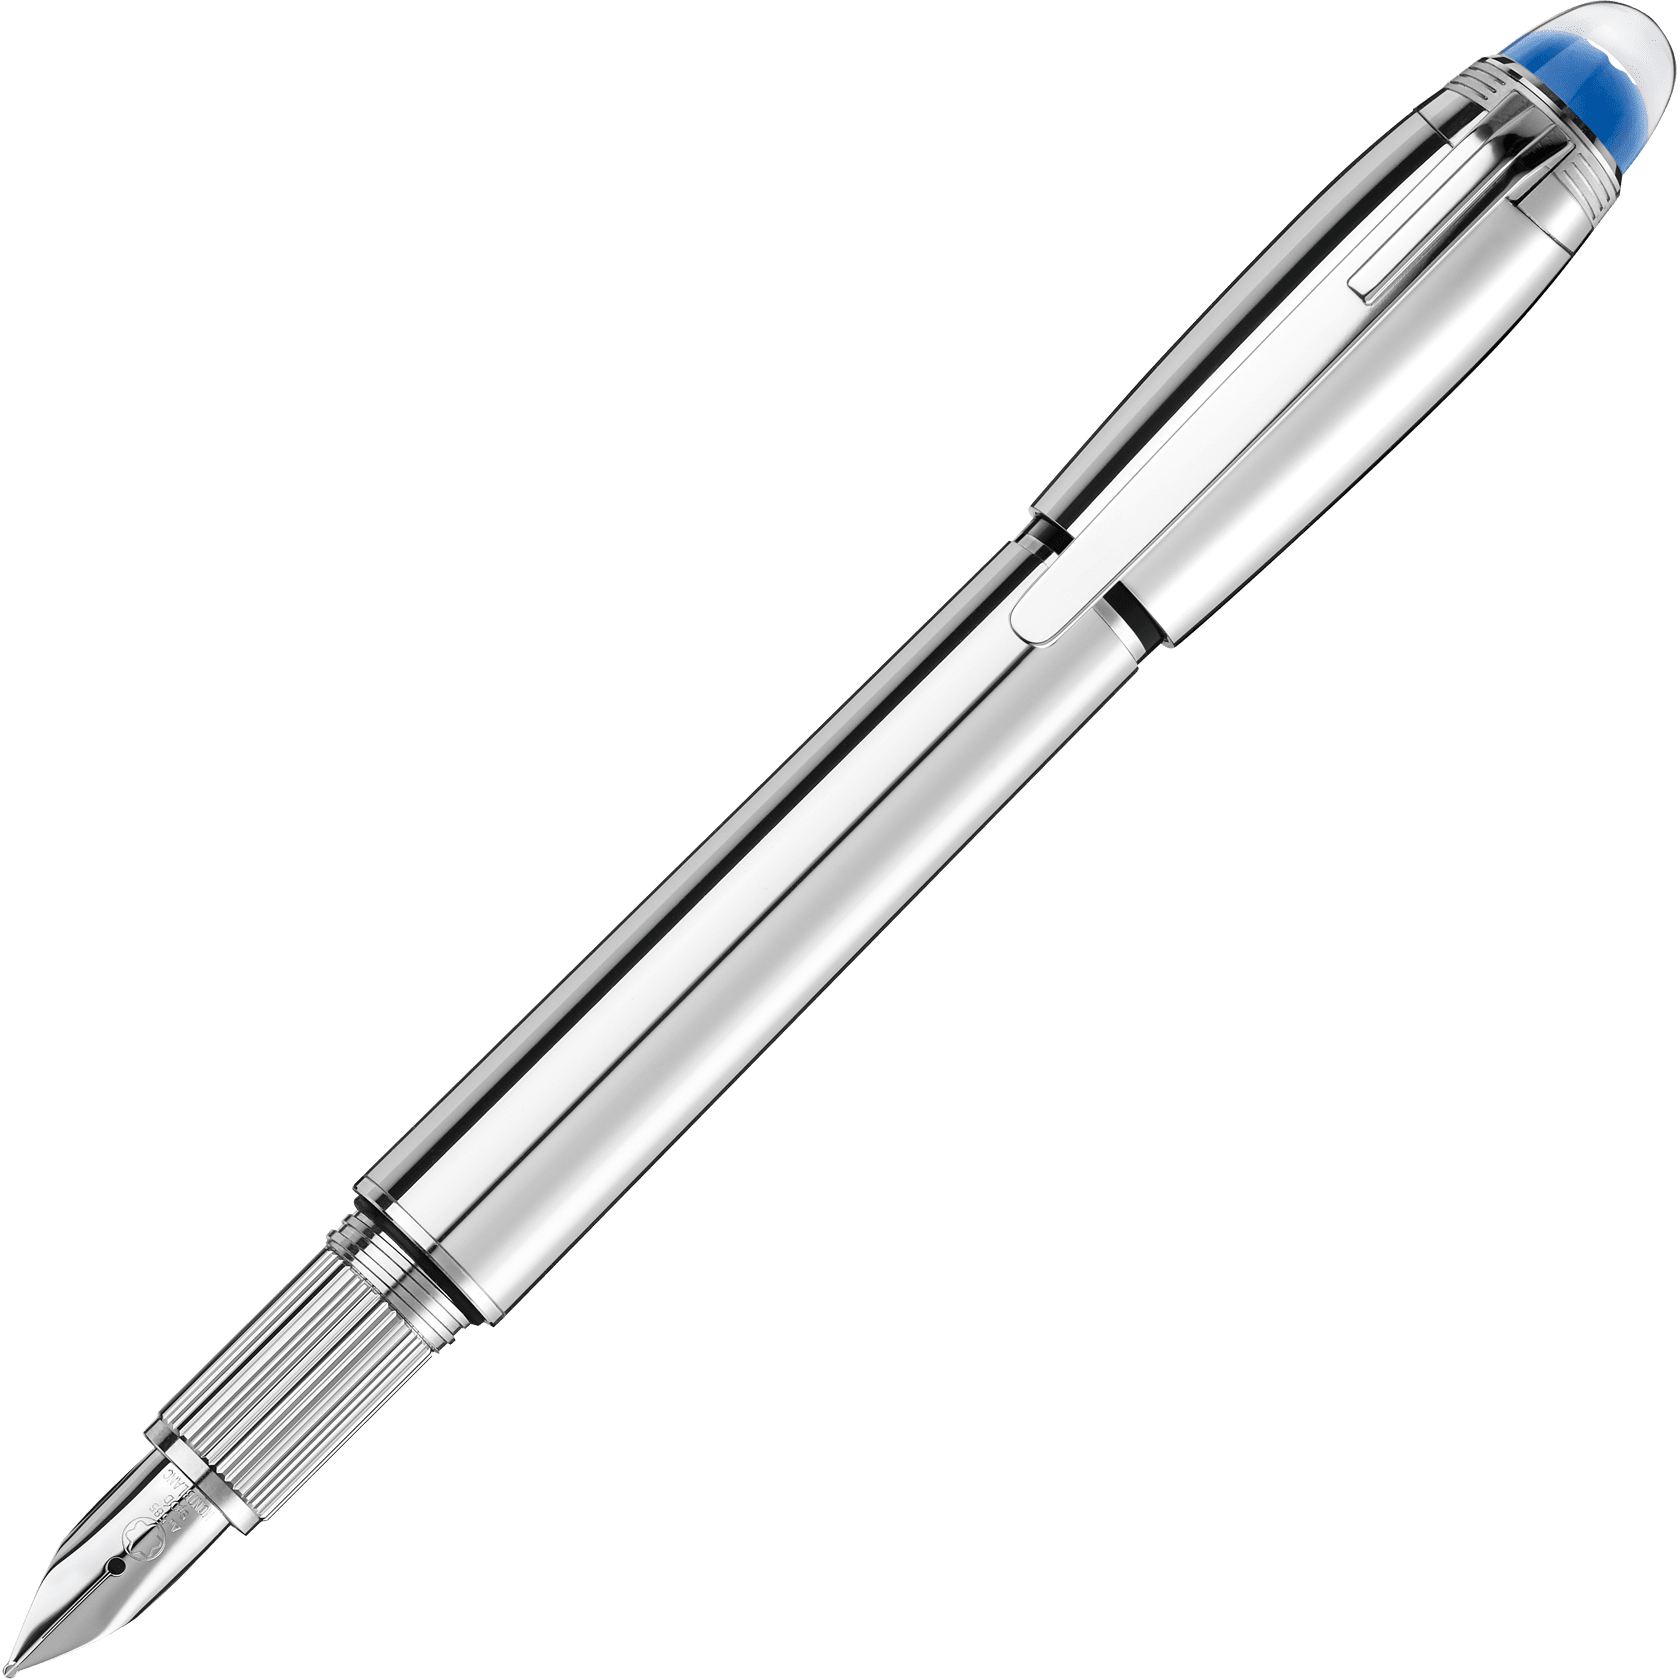 StarWalker Metal Fountain Pen